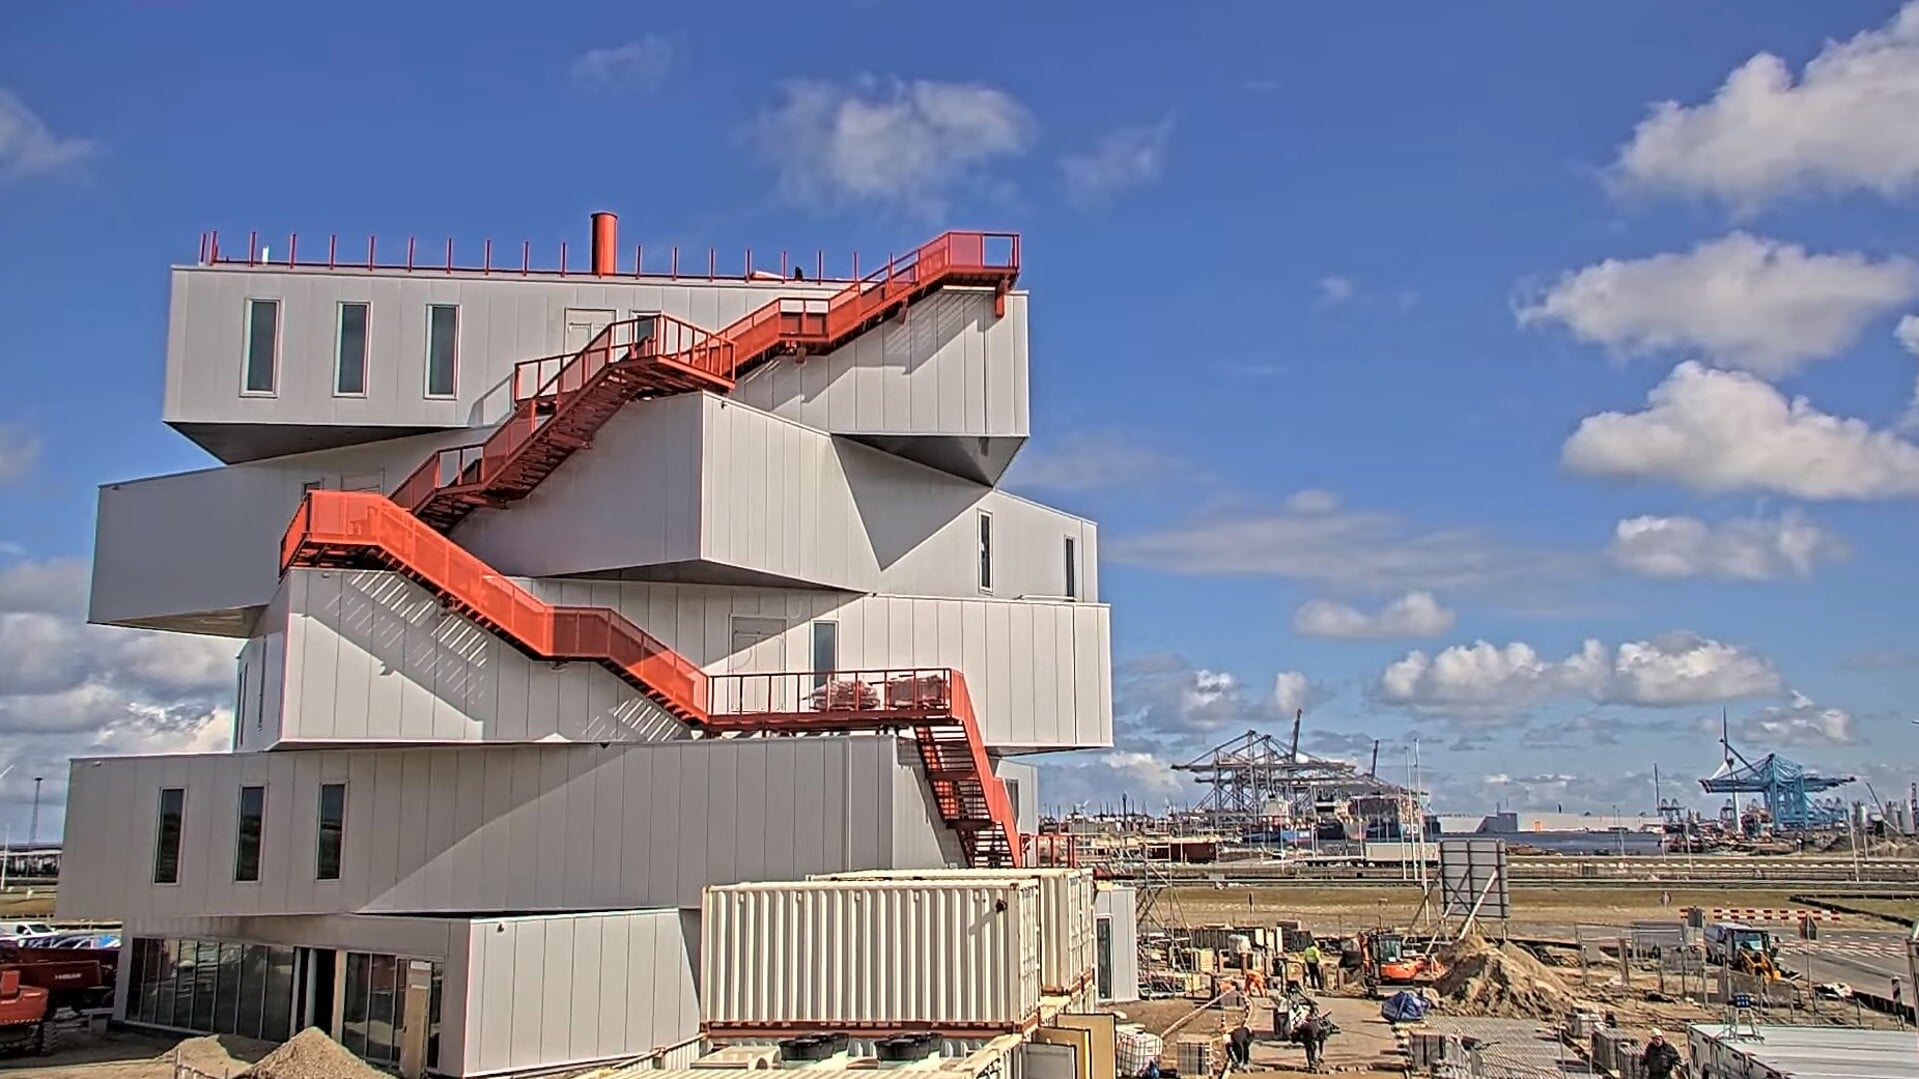 Het nieuwe havenervaringscentrum Portlantis op de Maasvlakte volgt aan het eind van dit jaar/begin 2025 het bezoekers- en informatiecentrum FutureLand op. Foto: MVRDVarchitects